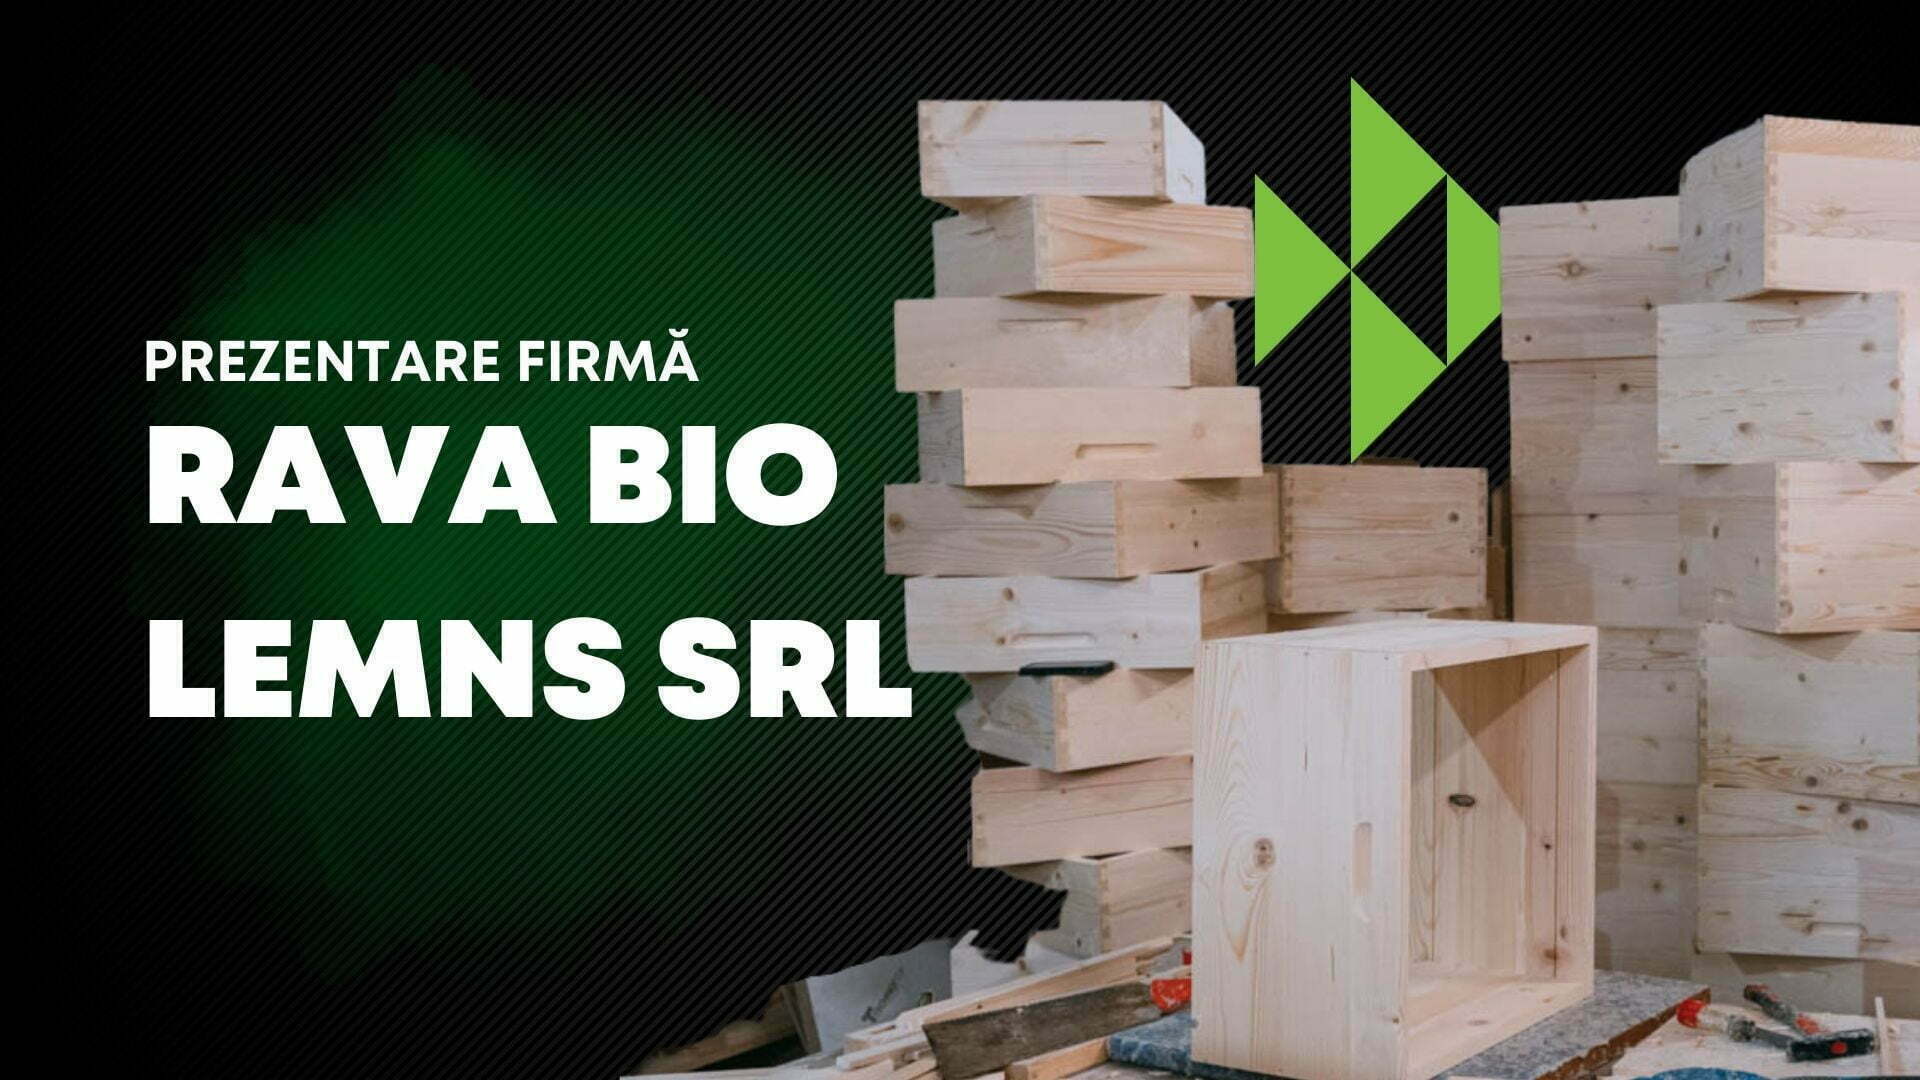 Prezentare firmă - RAVA BIO LEMNS SRL la Danibrum